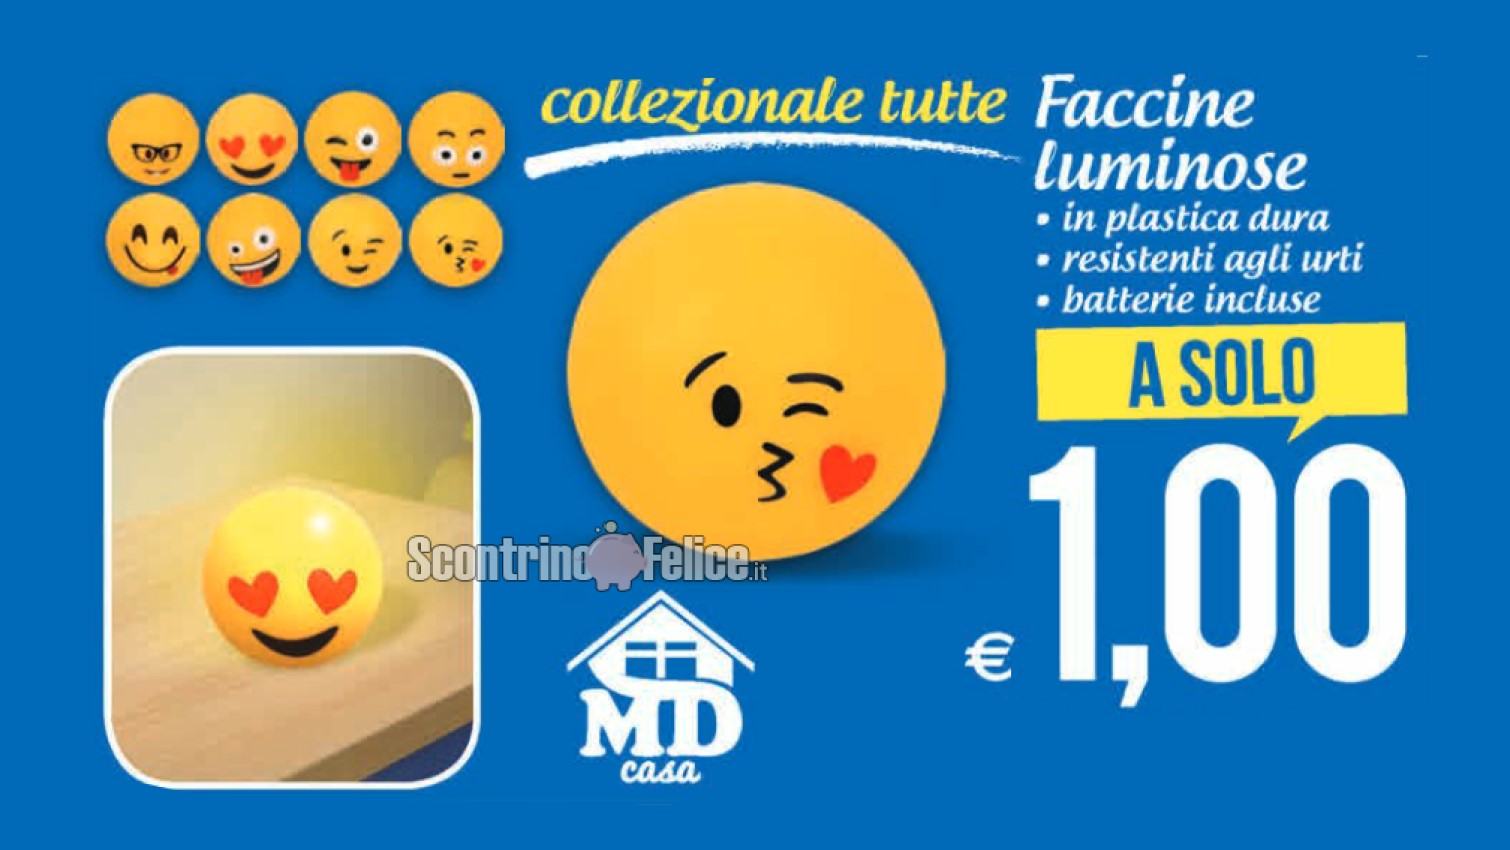 Faccine emoji luminose a solo 1 euro da MD: scopri come averle!